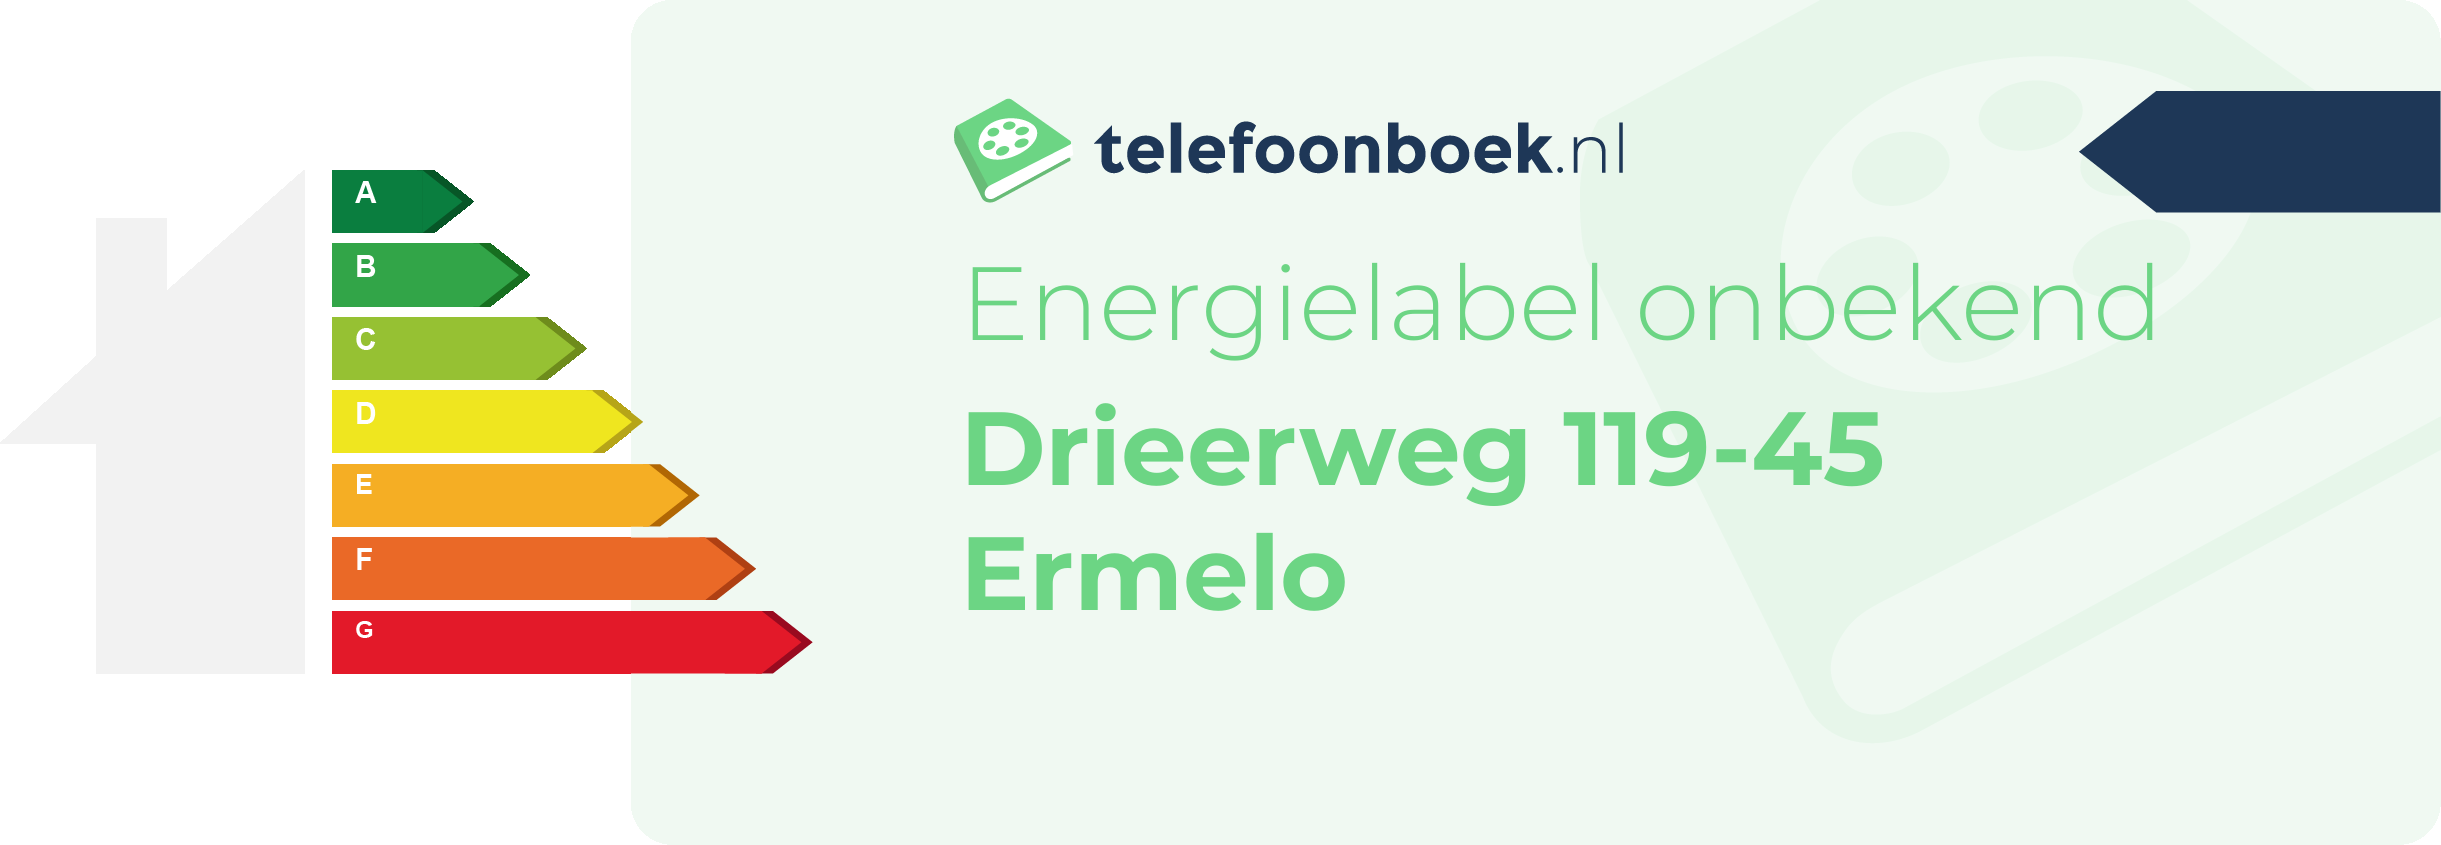 Energielabel Drieerweg 119-45 Ermelo